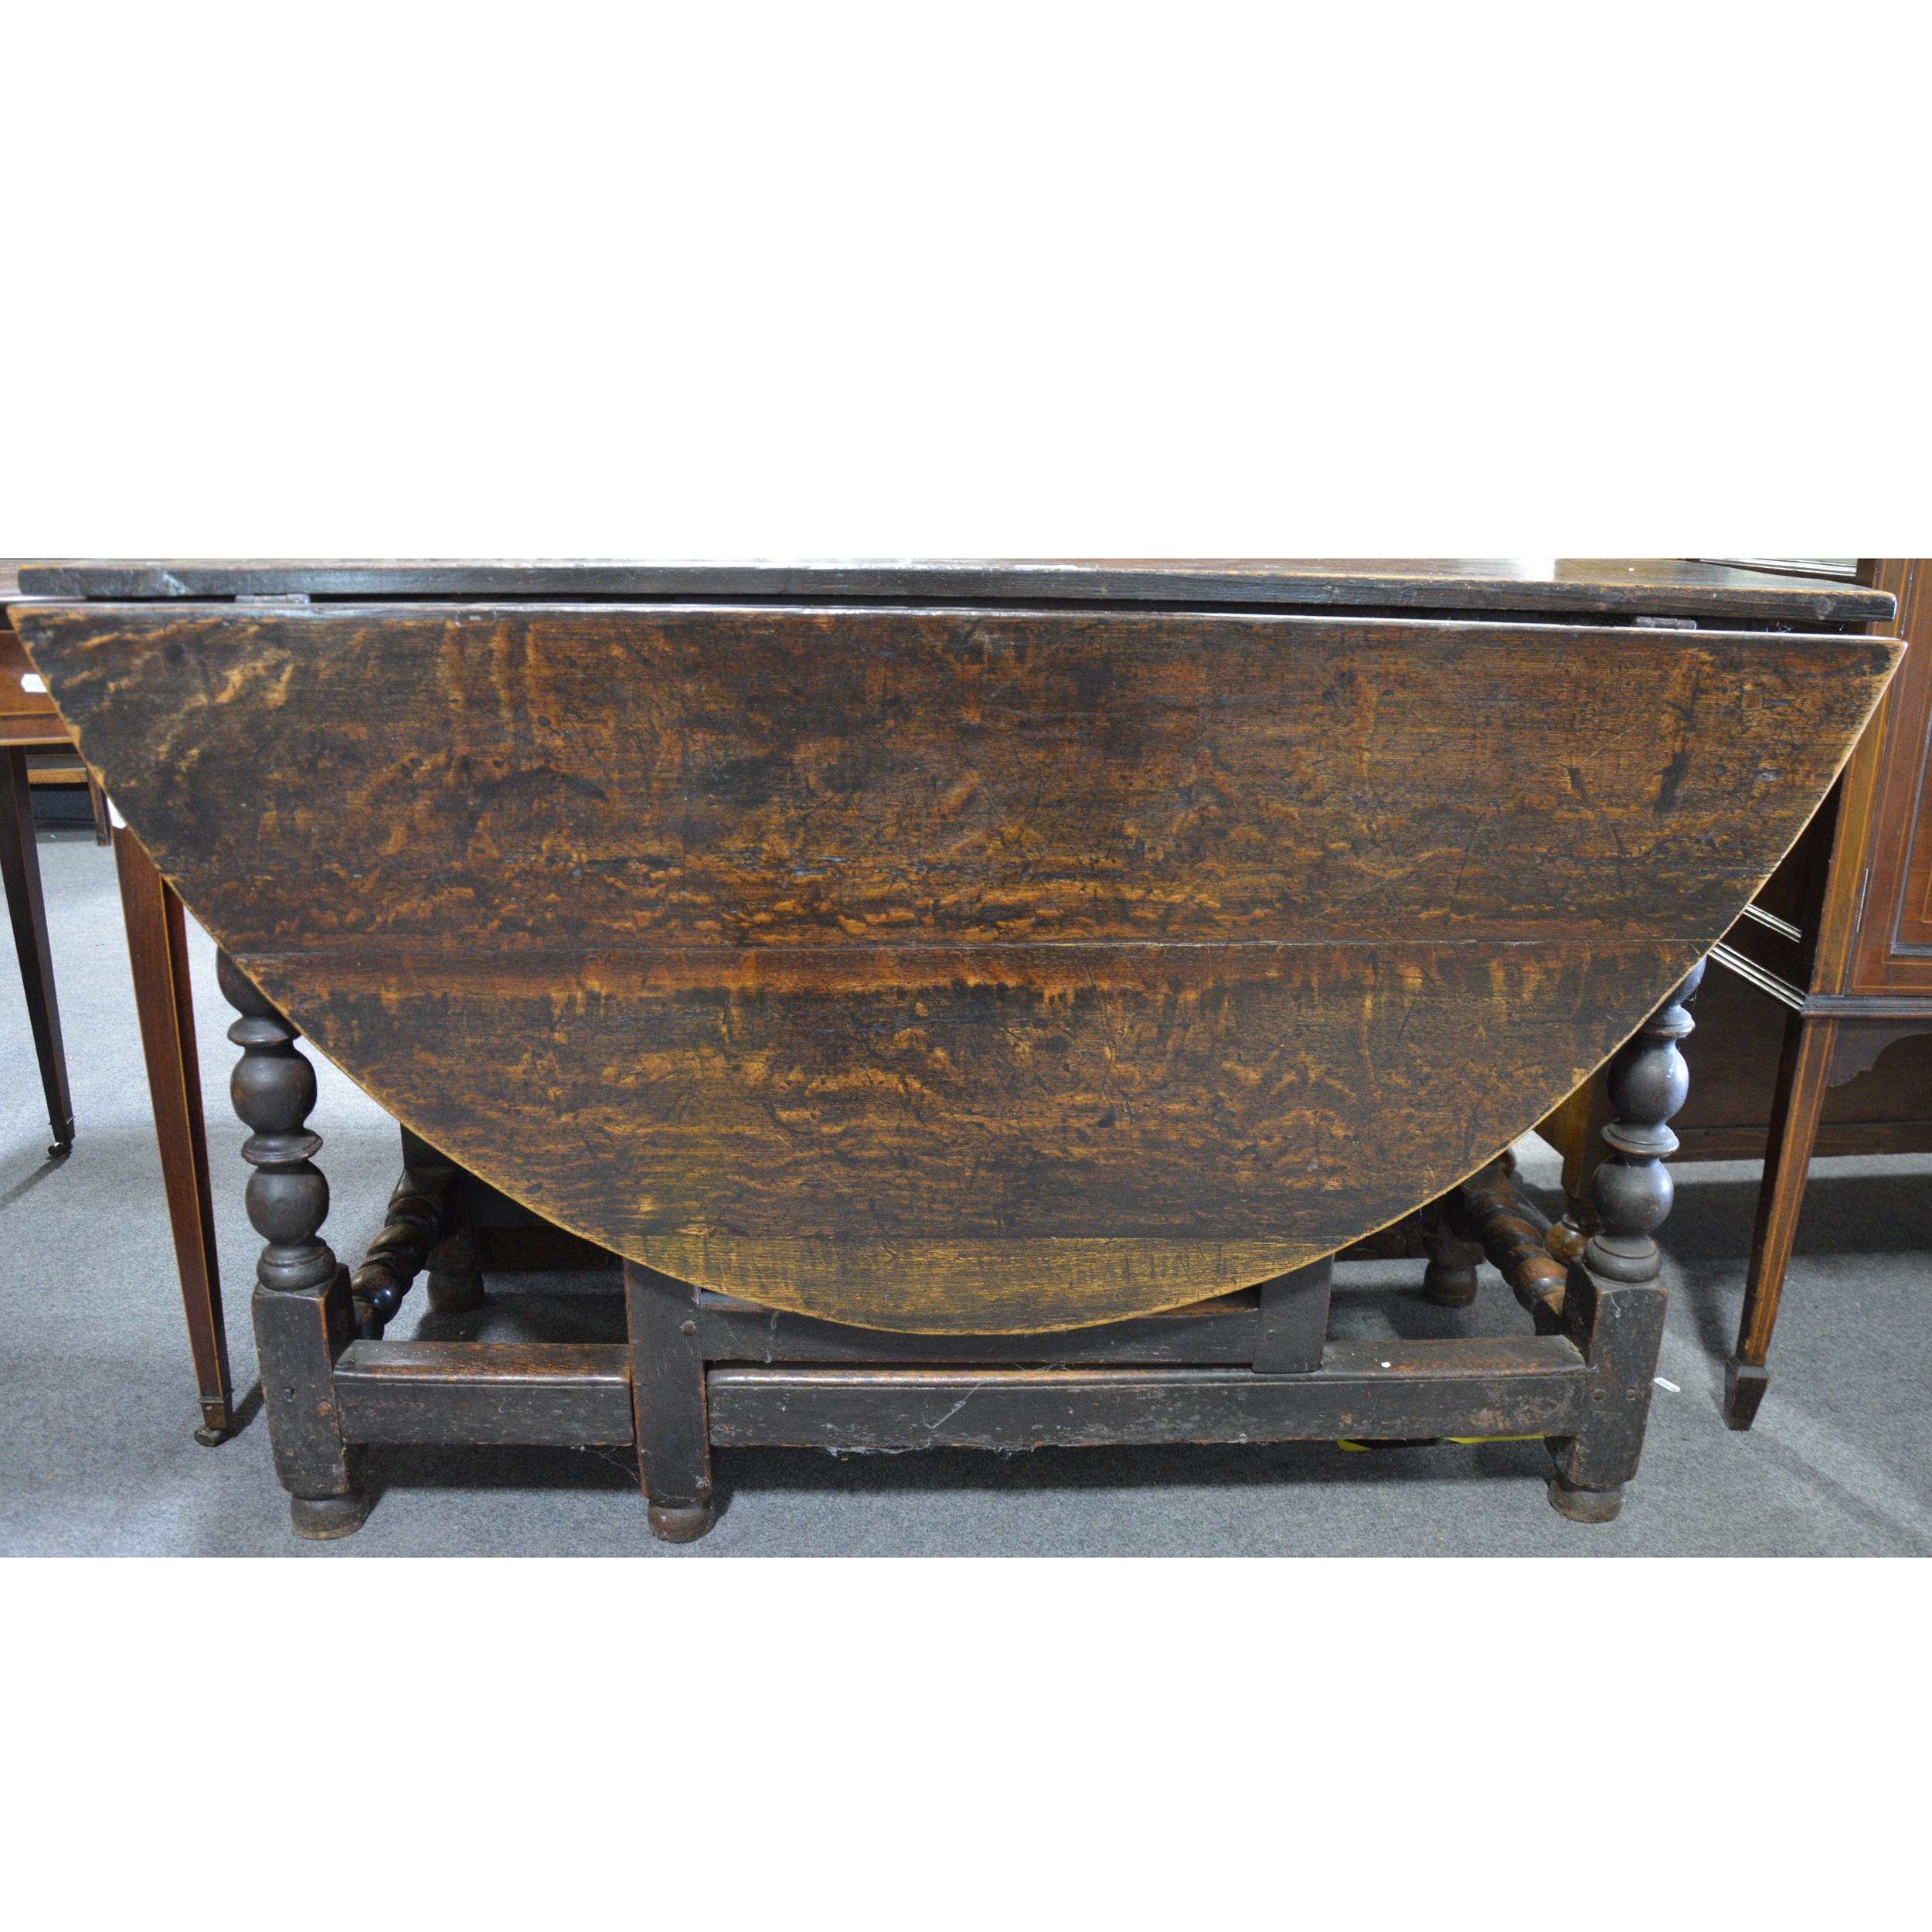 An old oak gateleg table